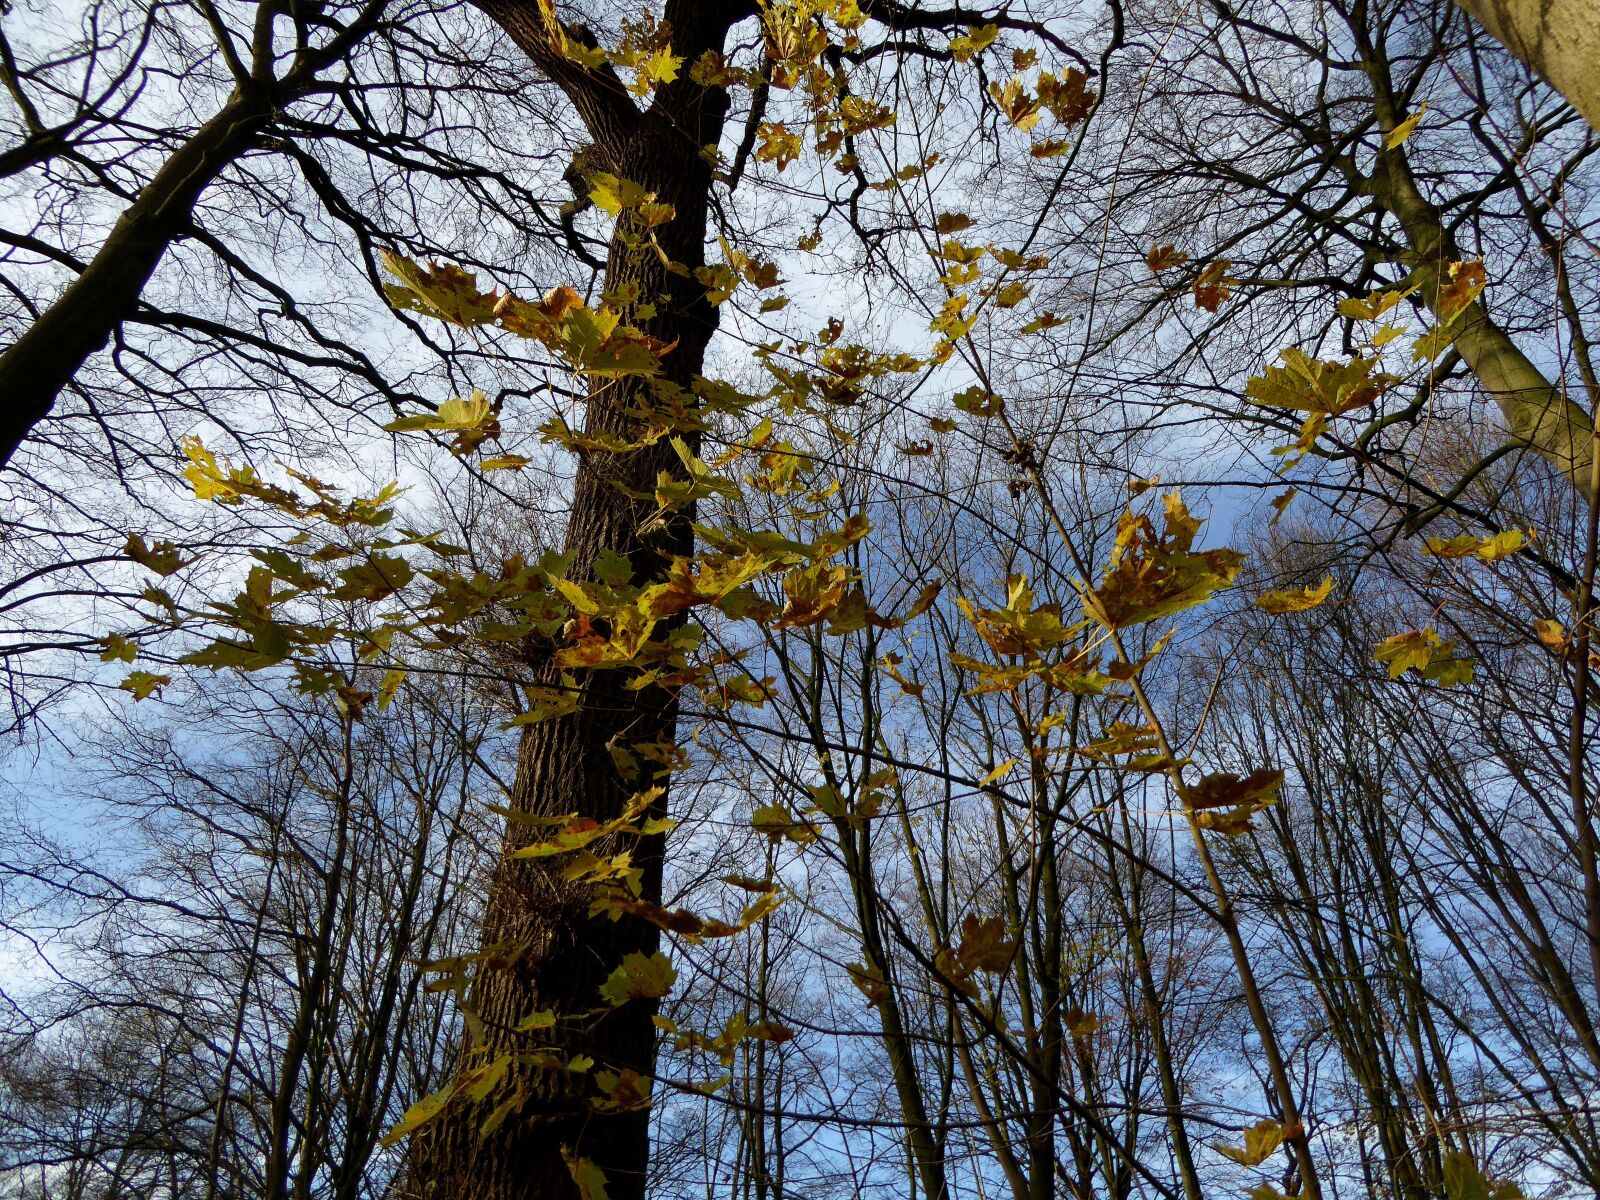 Panasonic DMC-TZ61 sample photo. Trees, autumn, sun photography